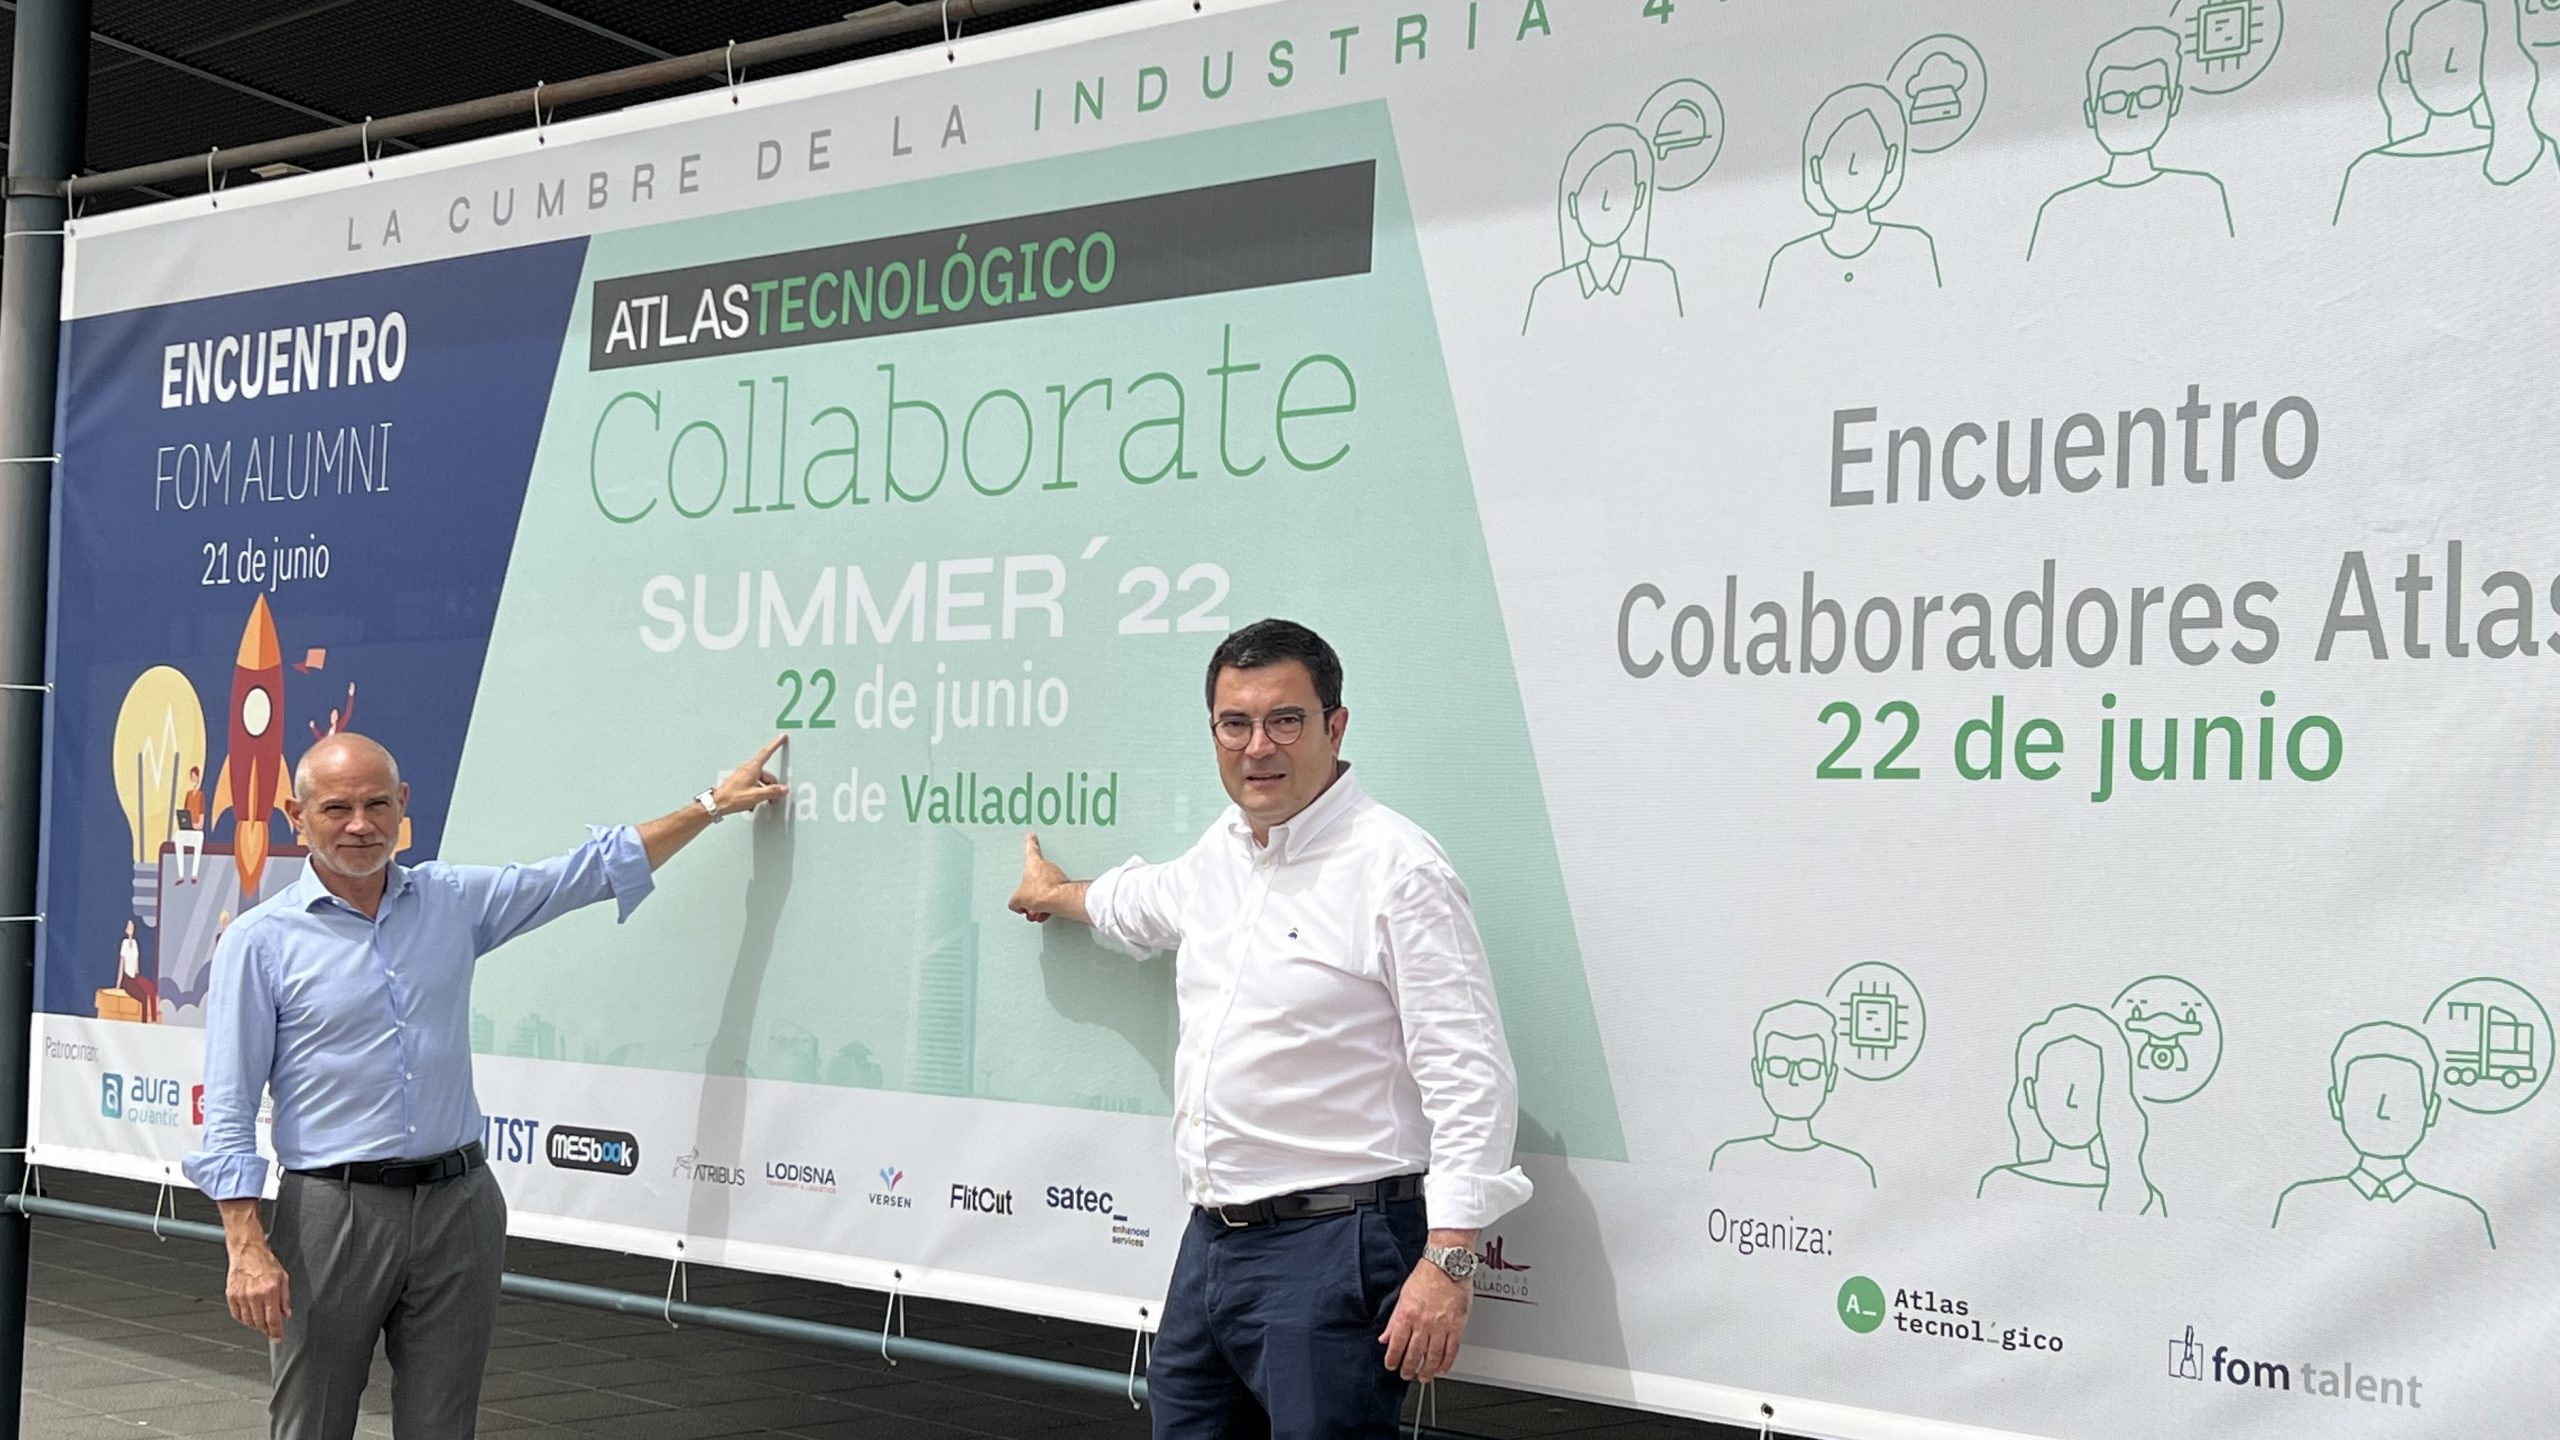 La Cámara de Valladolid, aliada de la Cumbre de la Industria 4.0 organizada por Atlas Tecnológico